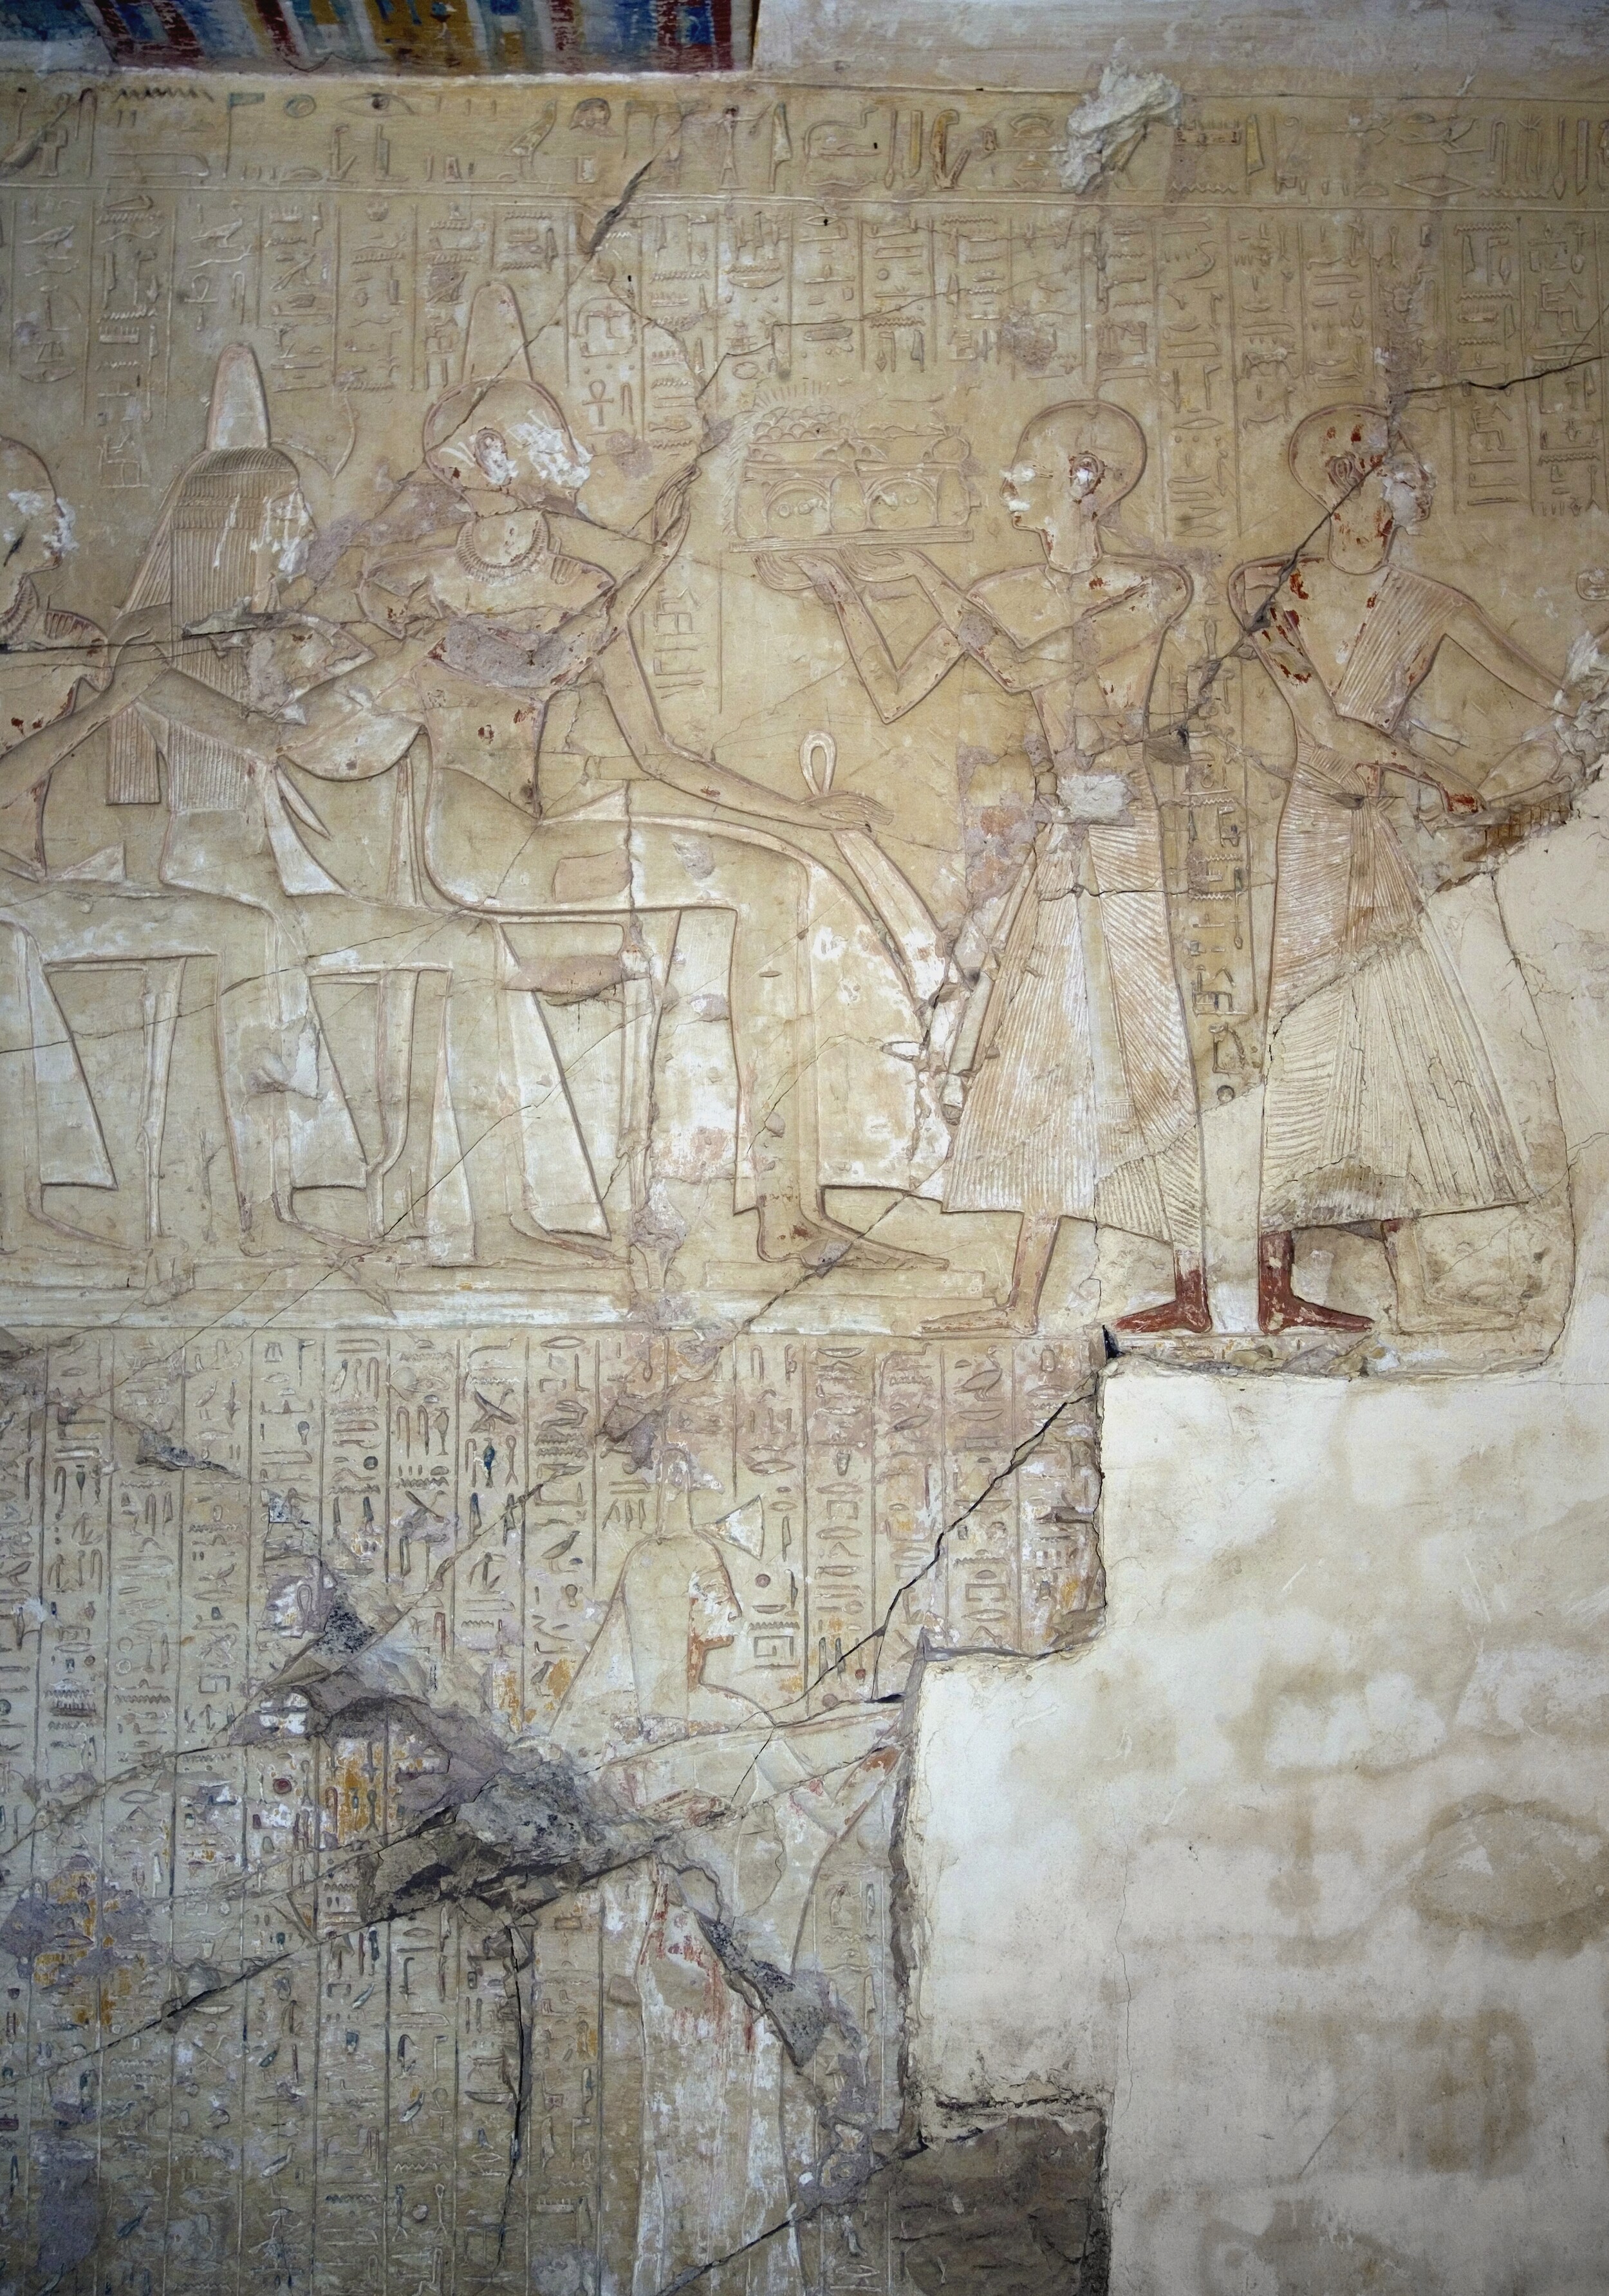 ο περίτεχνες τοιχογραφίες του τάφου του νεφερχοτέπ έρχονται στο φως